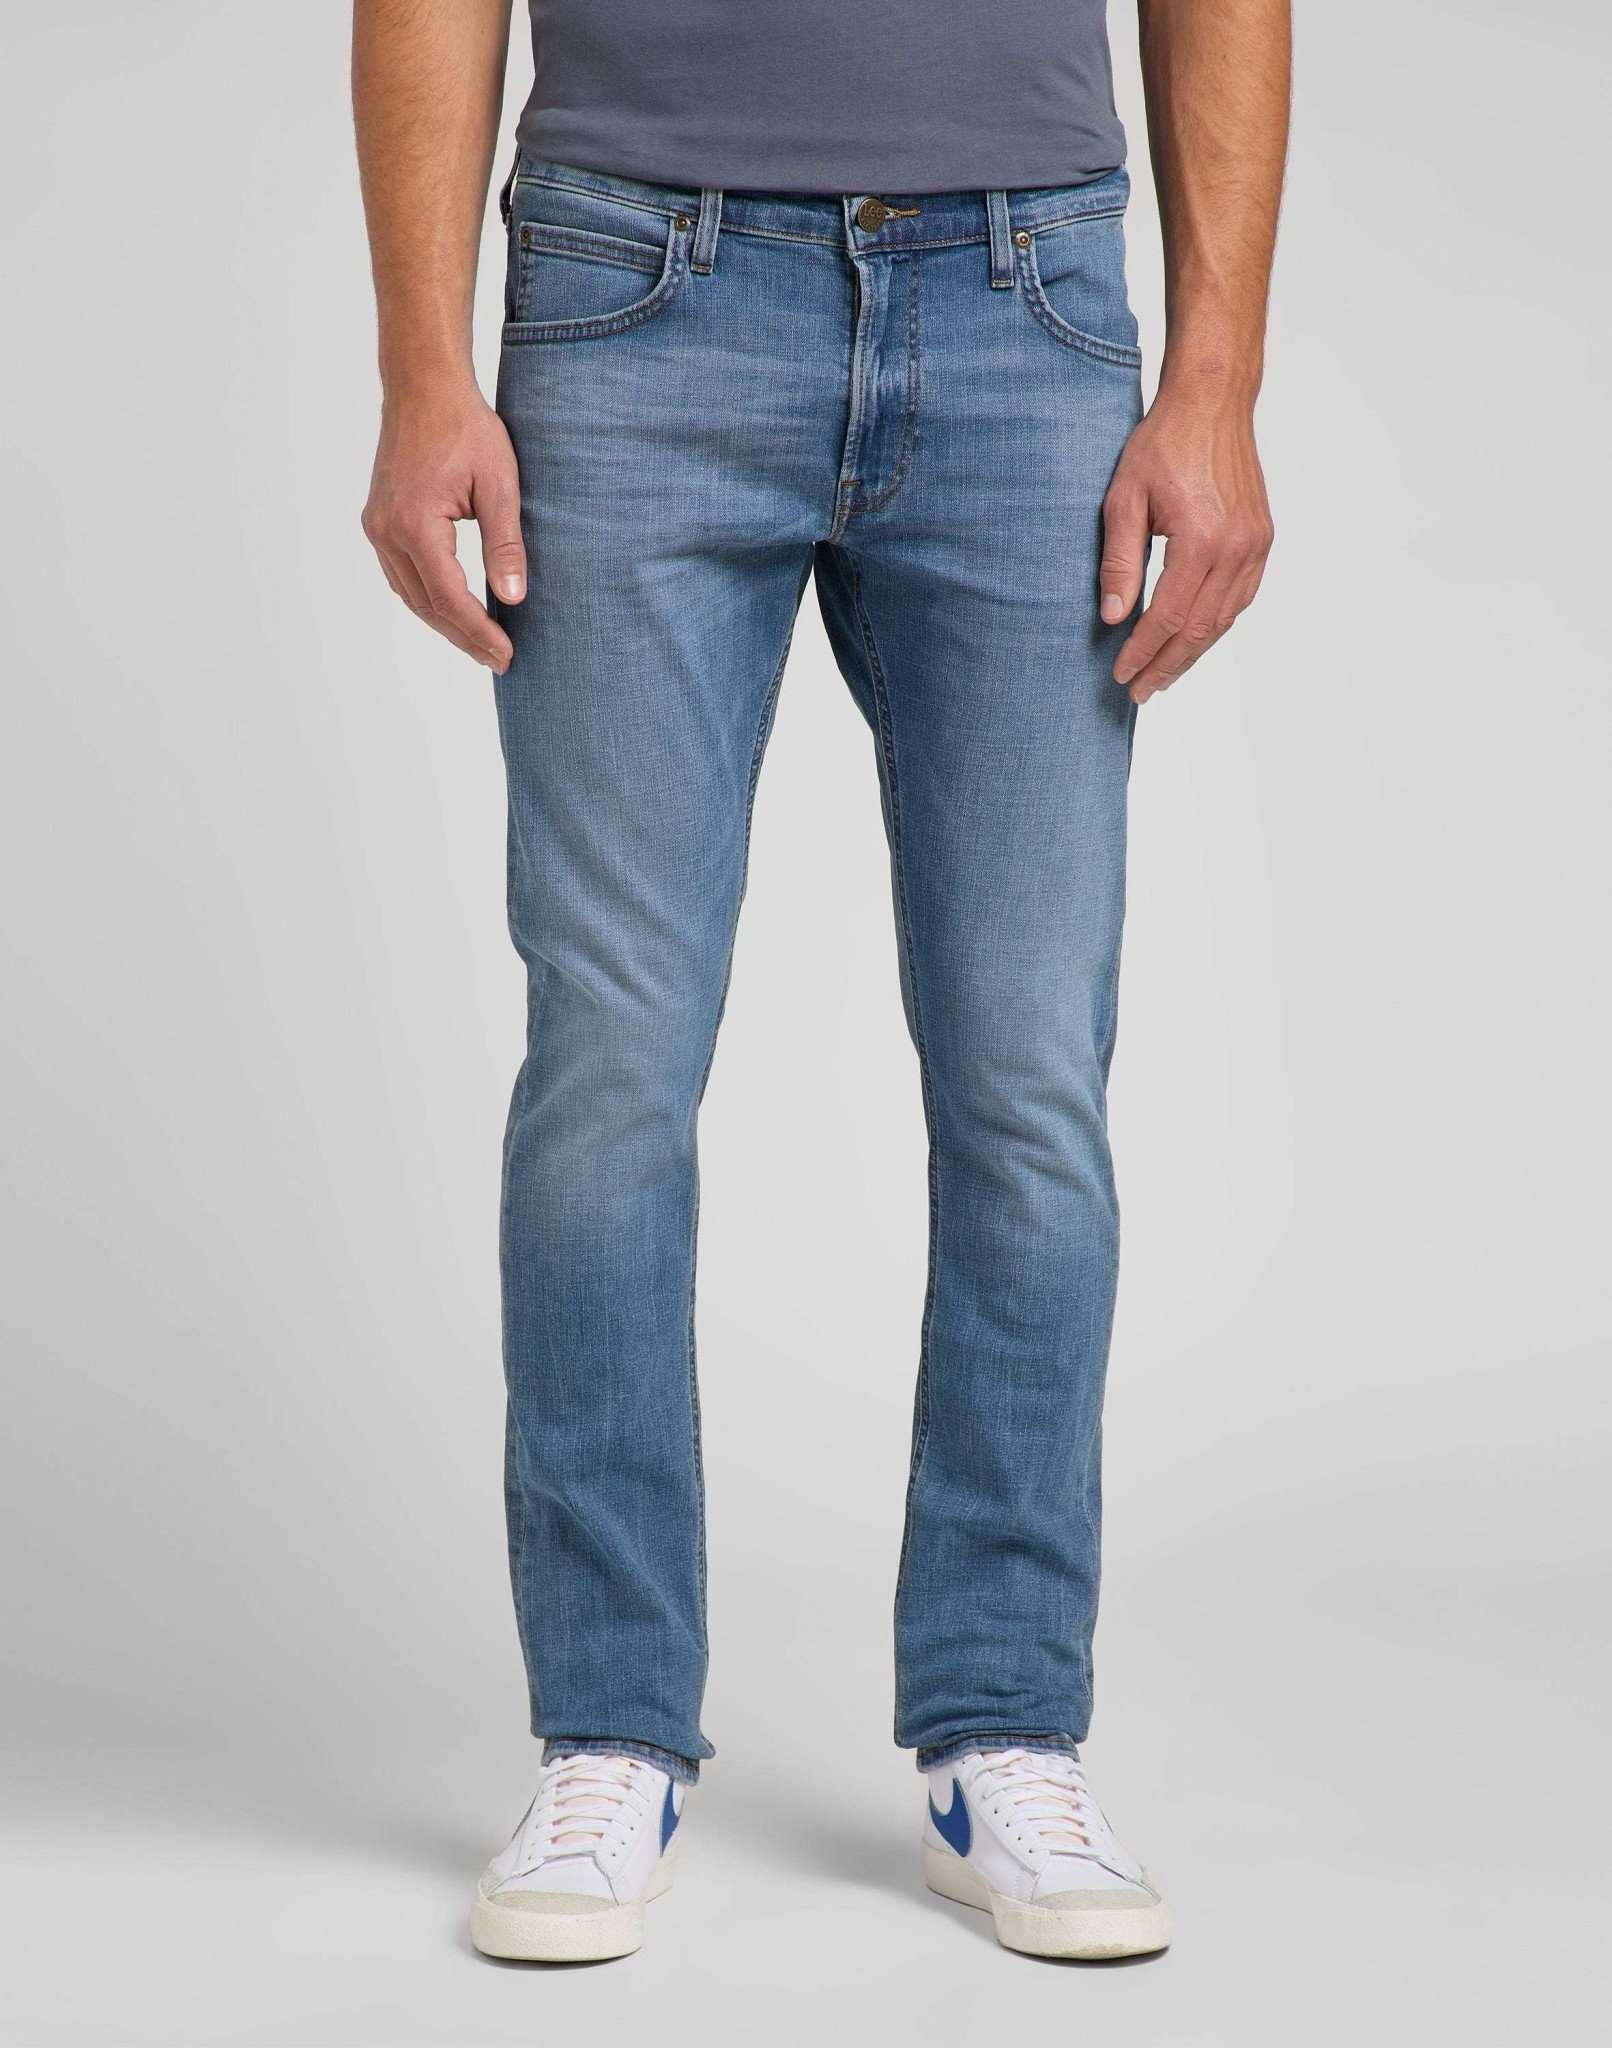 Jeans Slim Fit Luke Herren Blau Denim L34/W34 von Lee